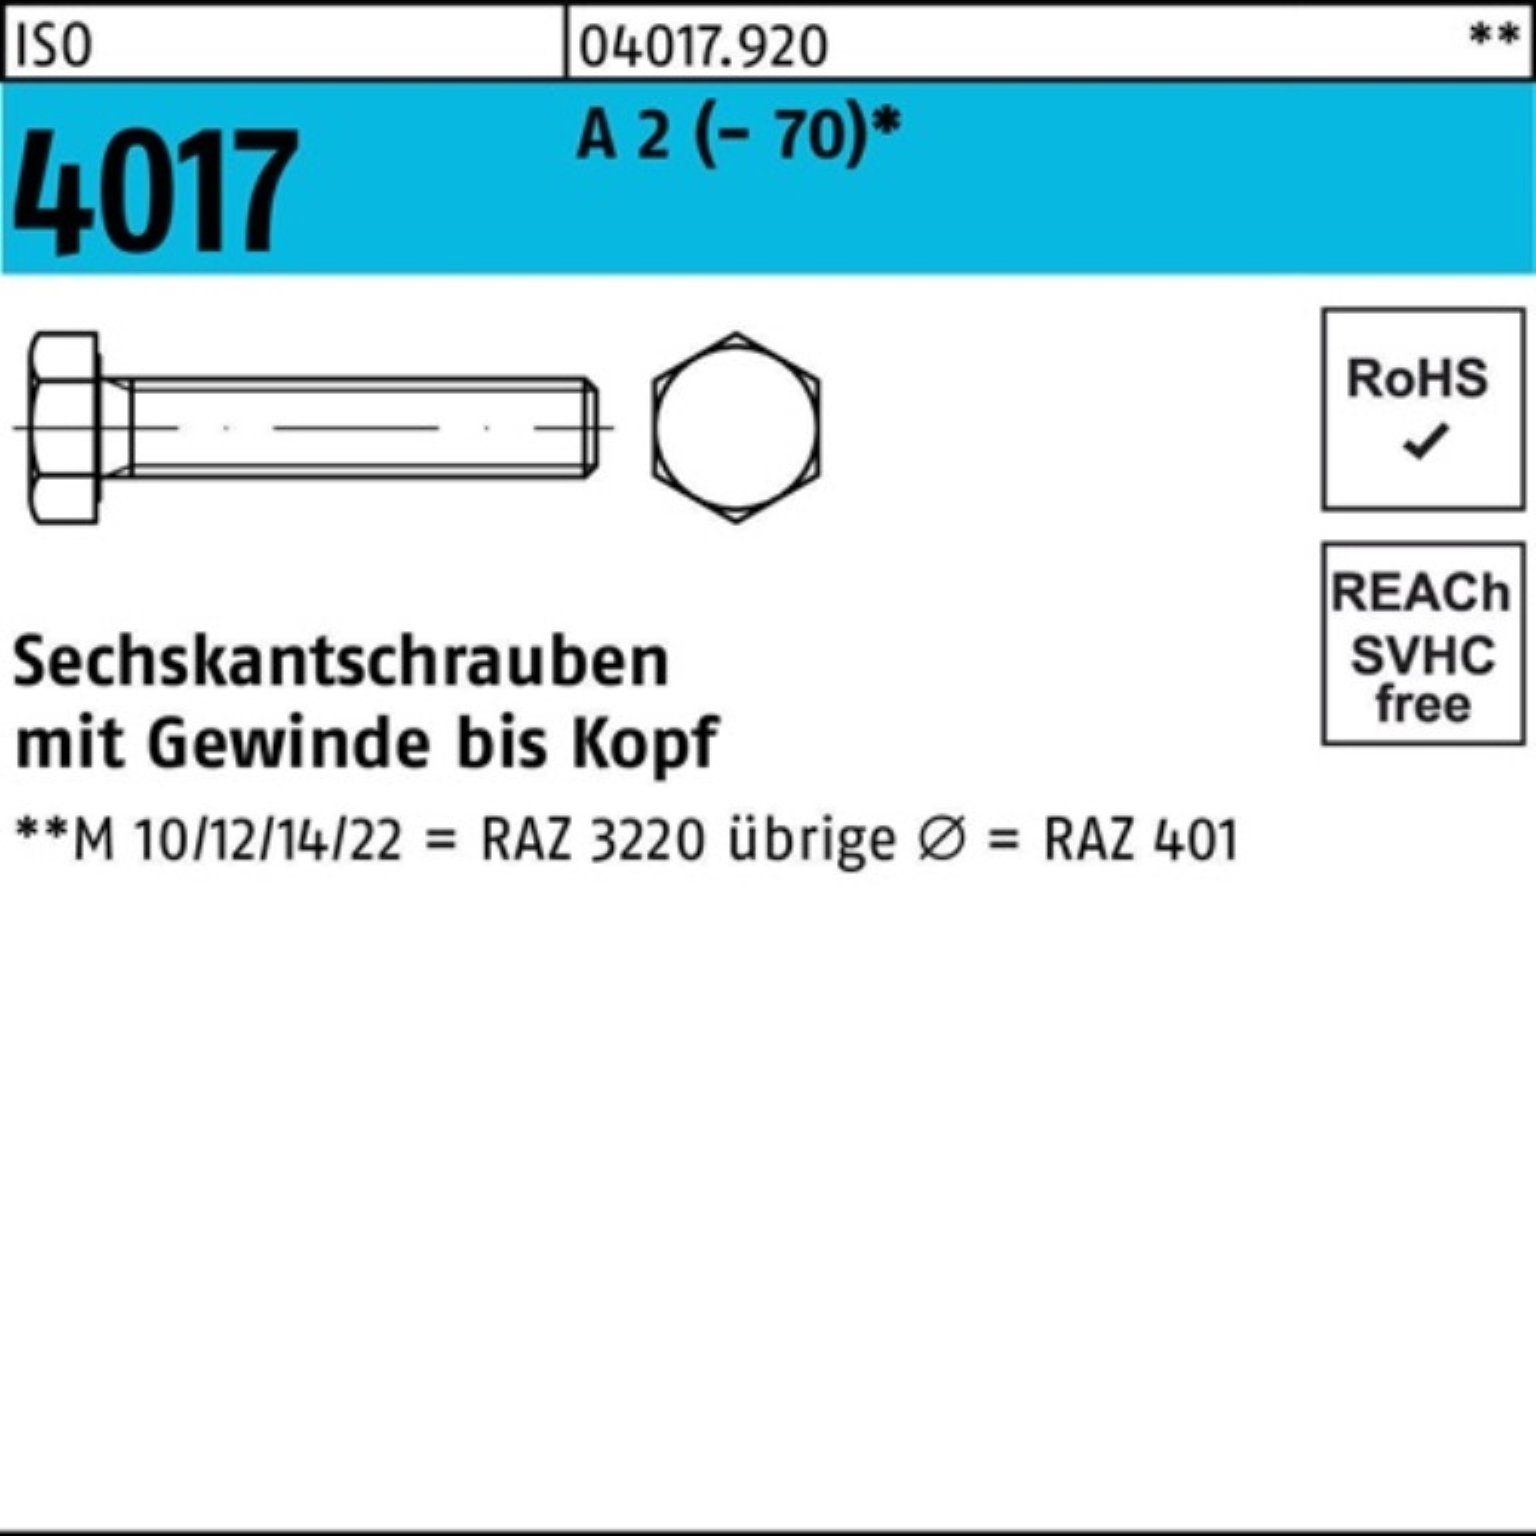 100 100er (70) M33x Stück ISO VG Sechskantschraube Pack Bufab Sechskantschraube 1 4017 2 A